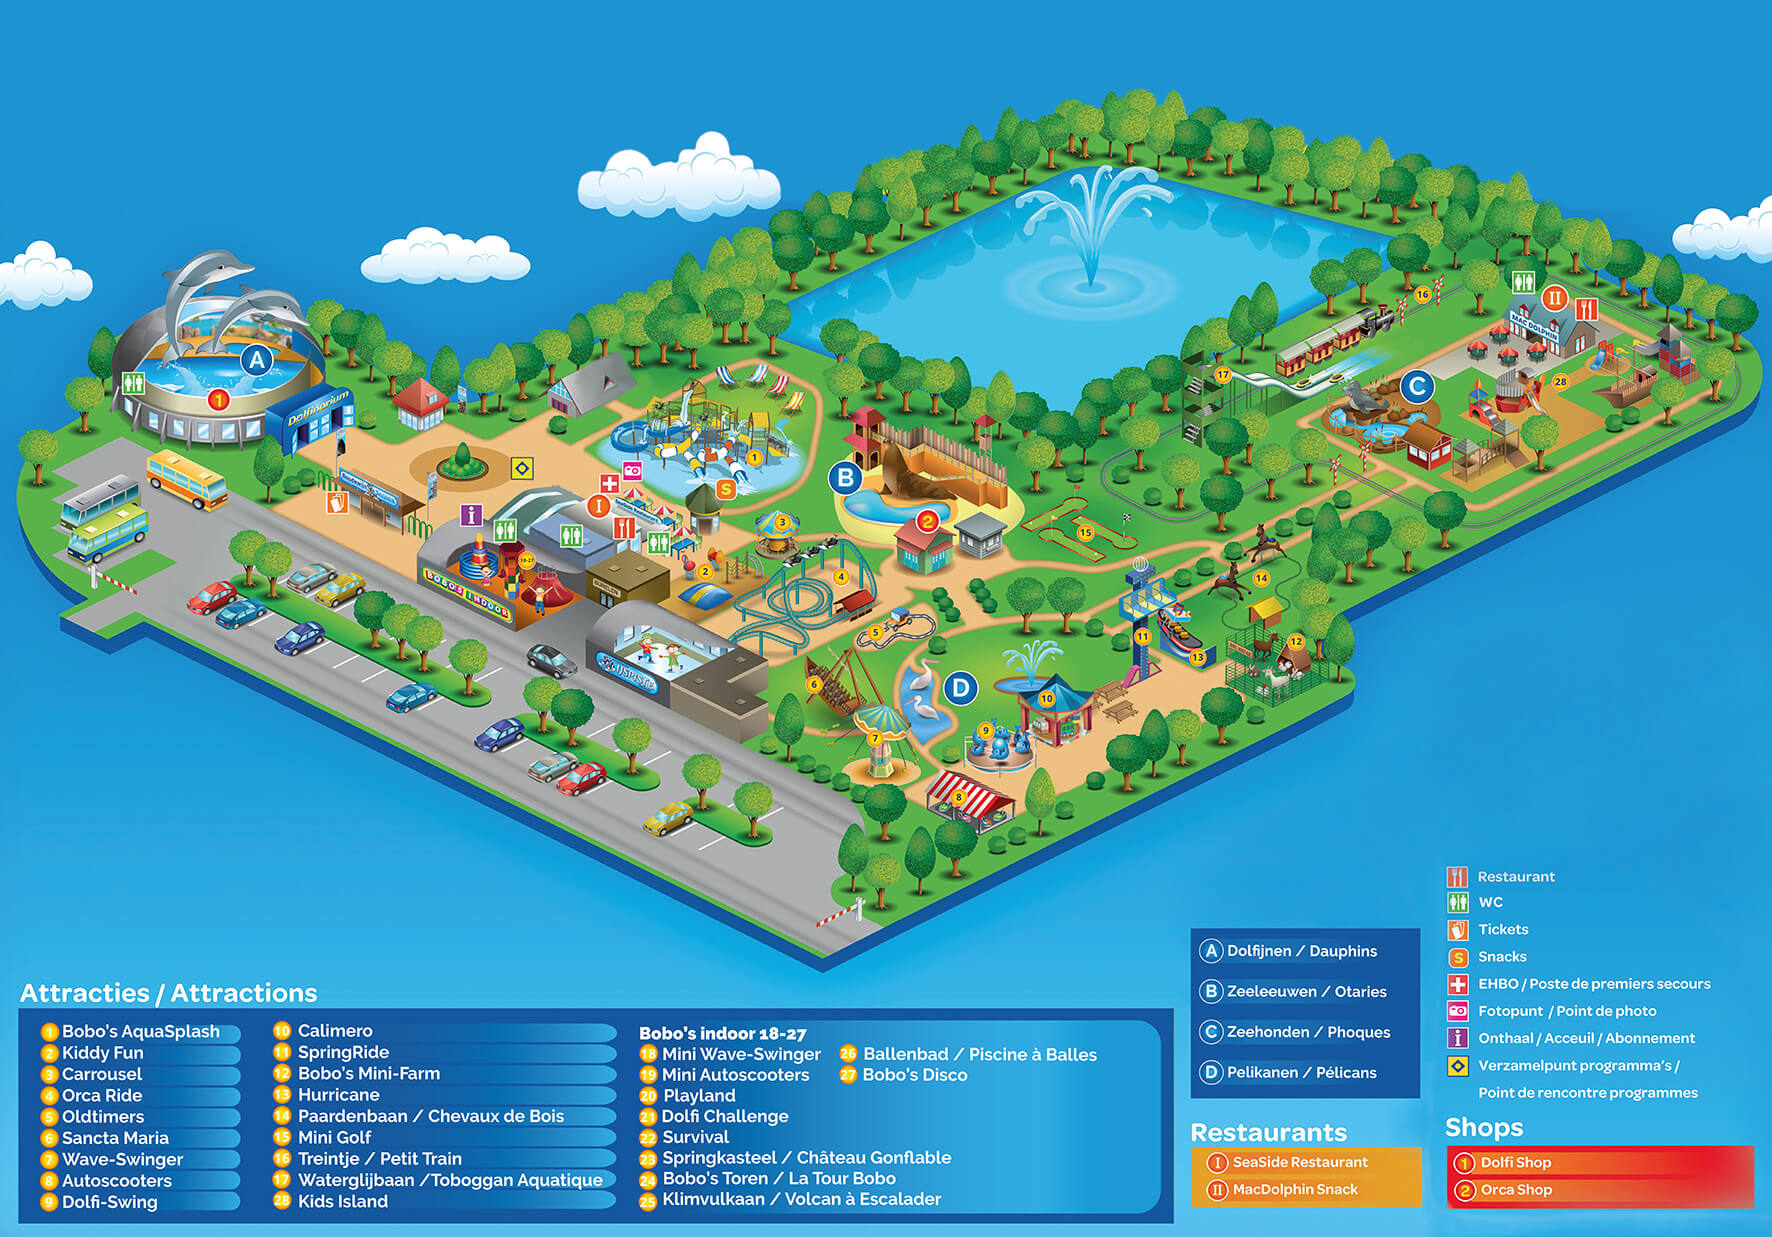 Discover Boudewijn Seapark via the map.